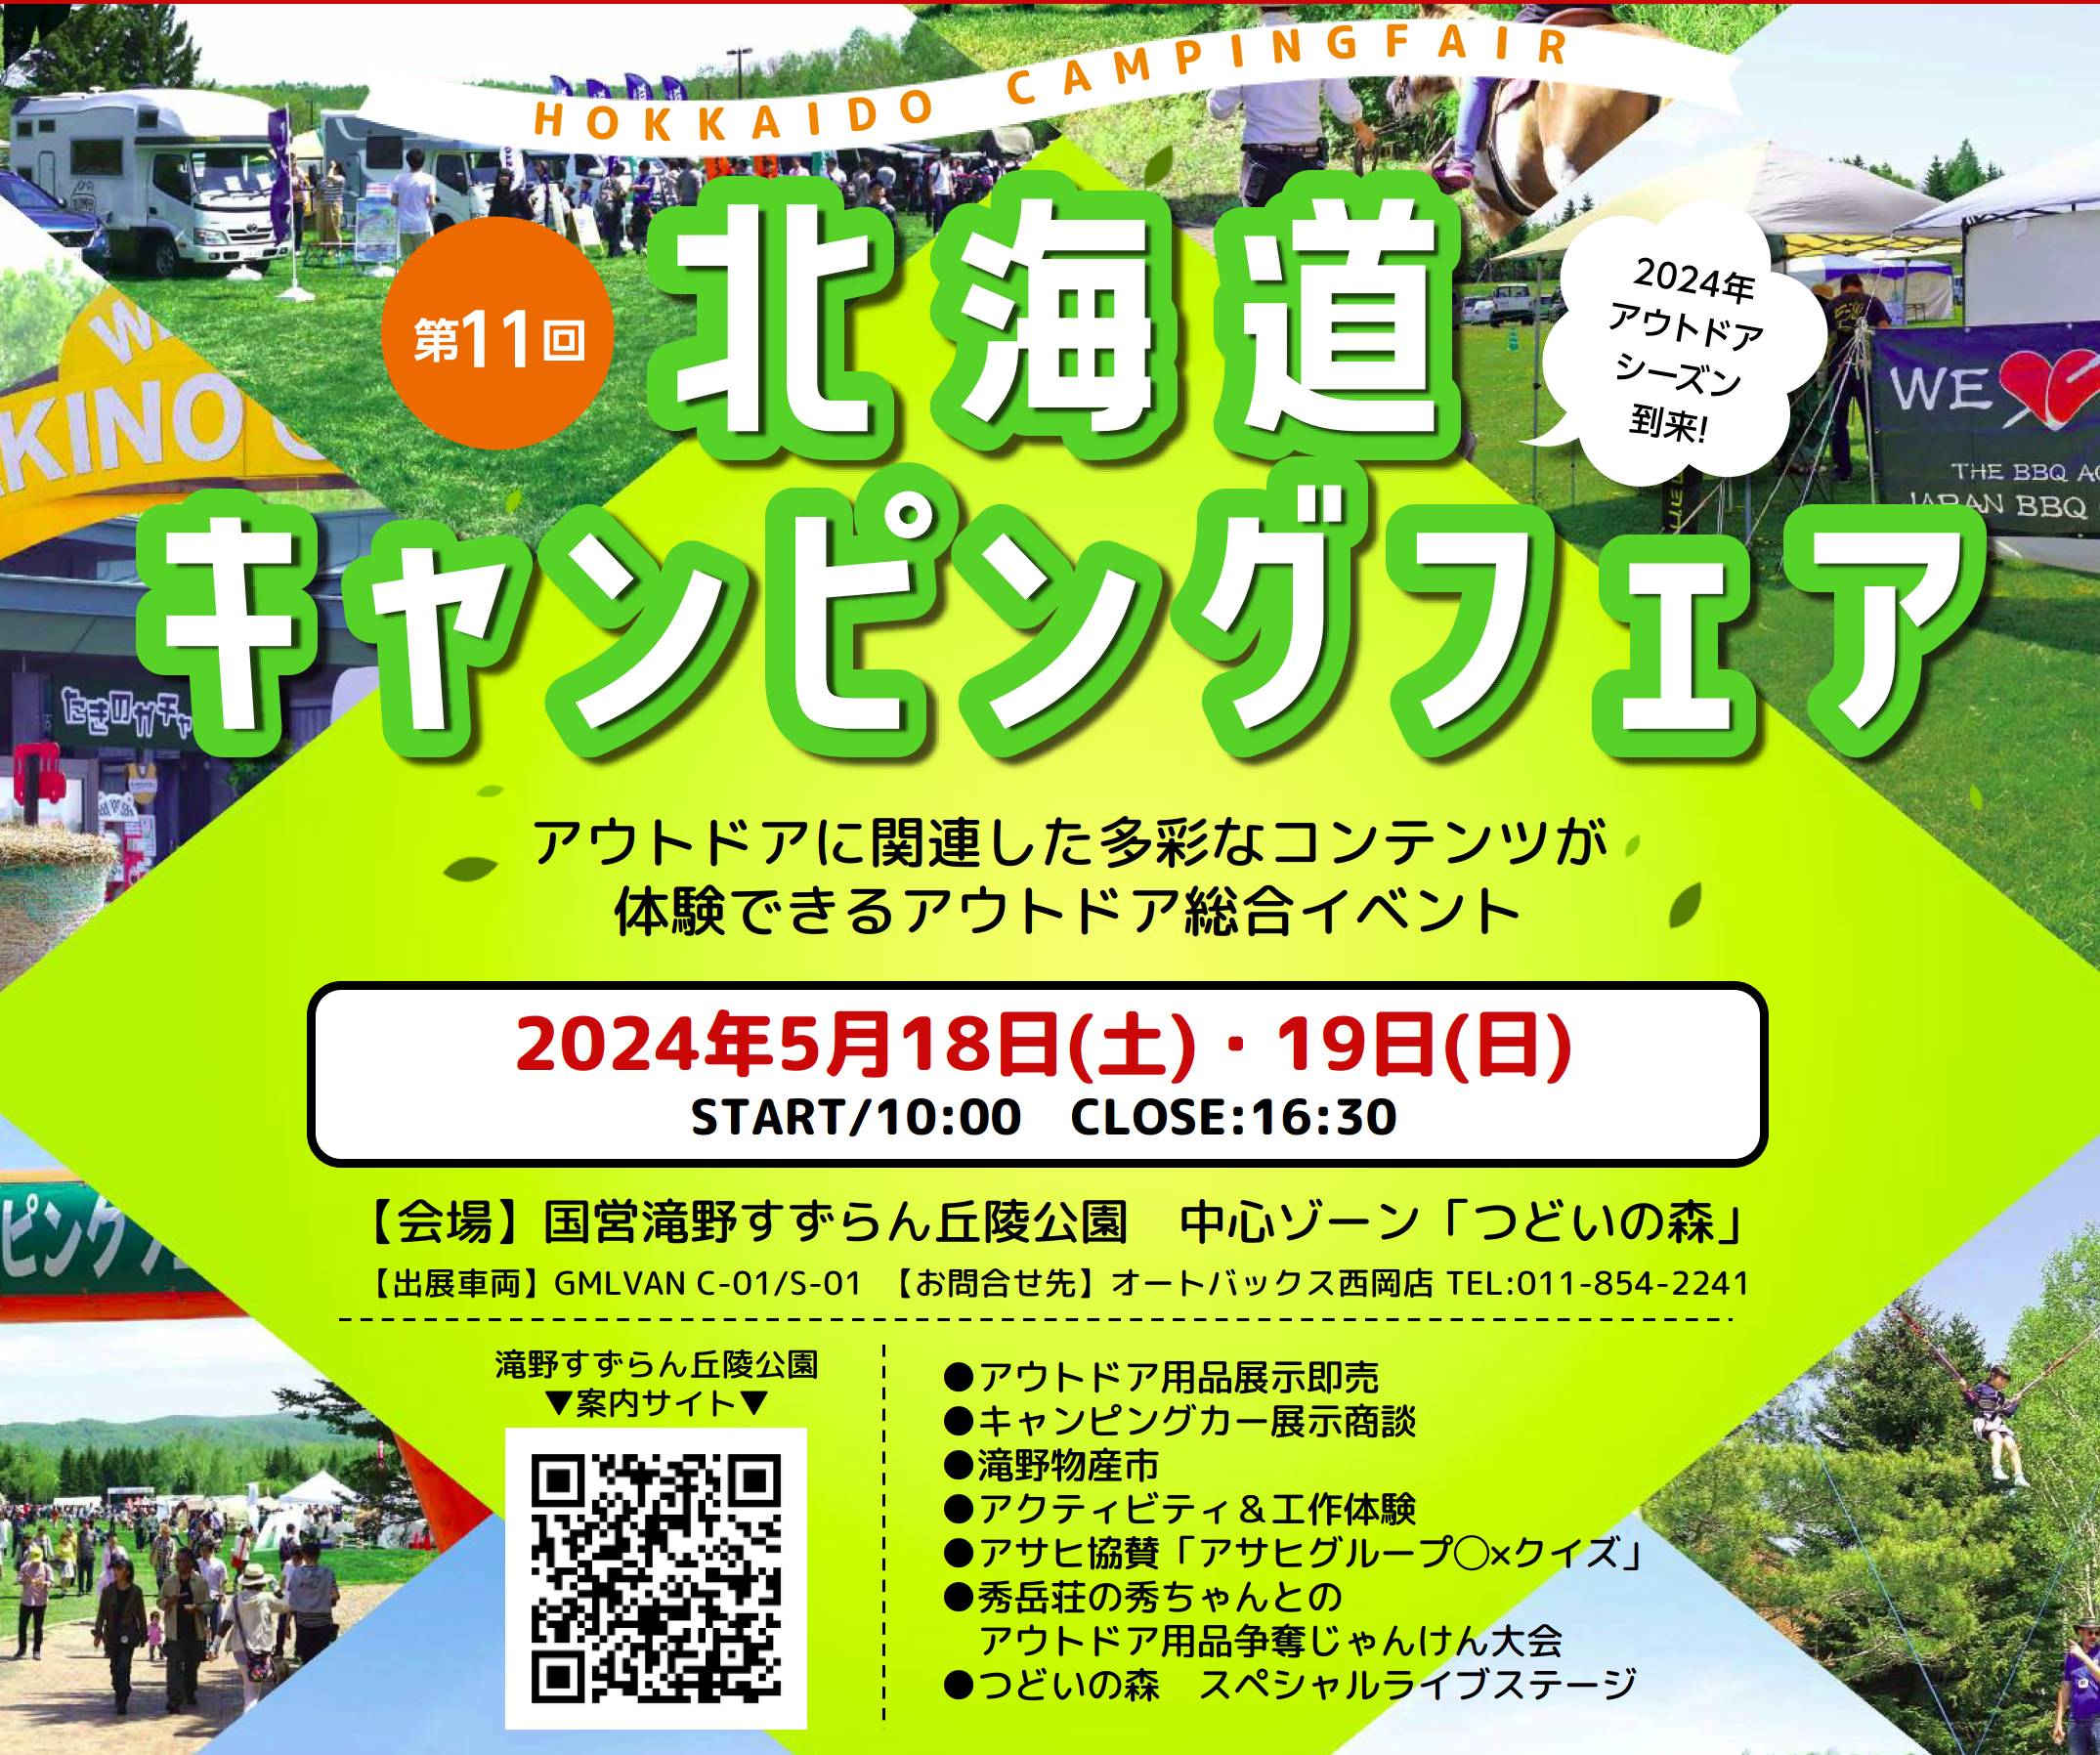 2405_camping_fair.jpg